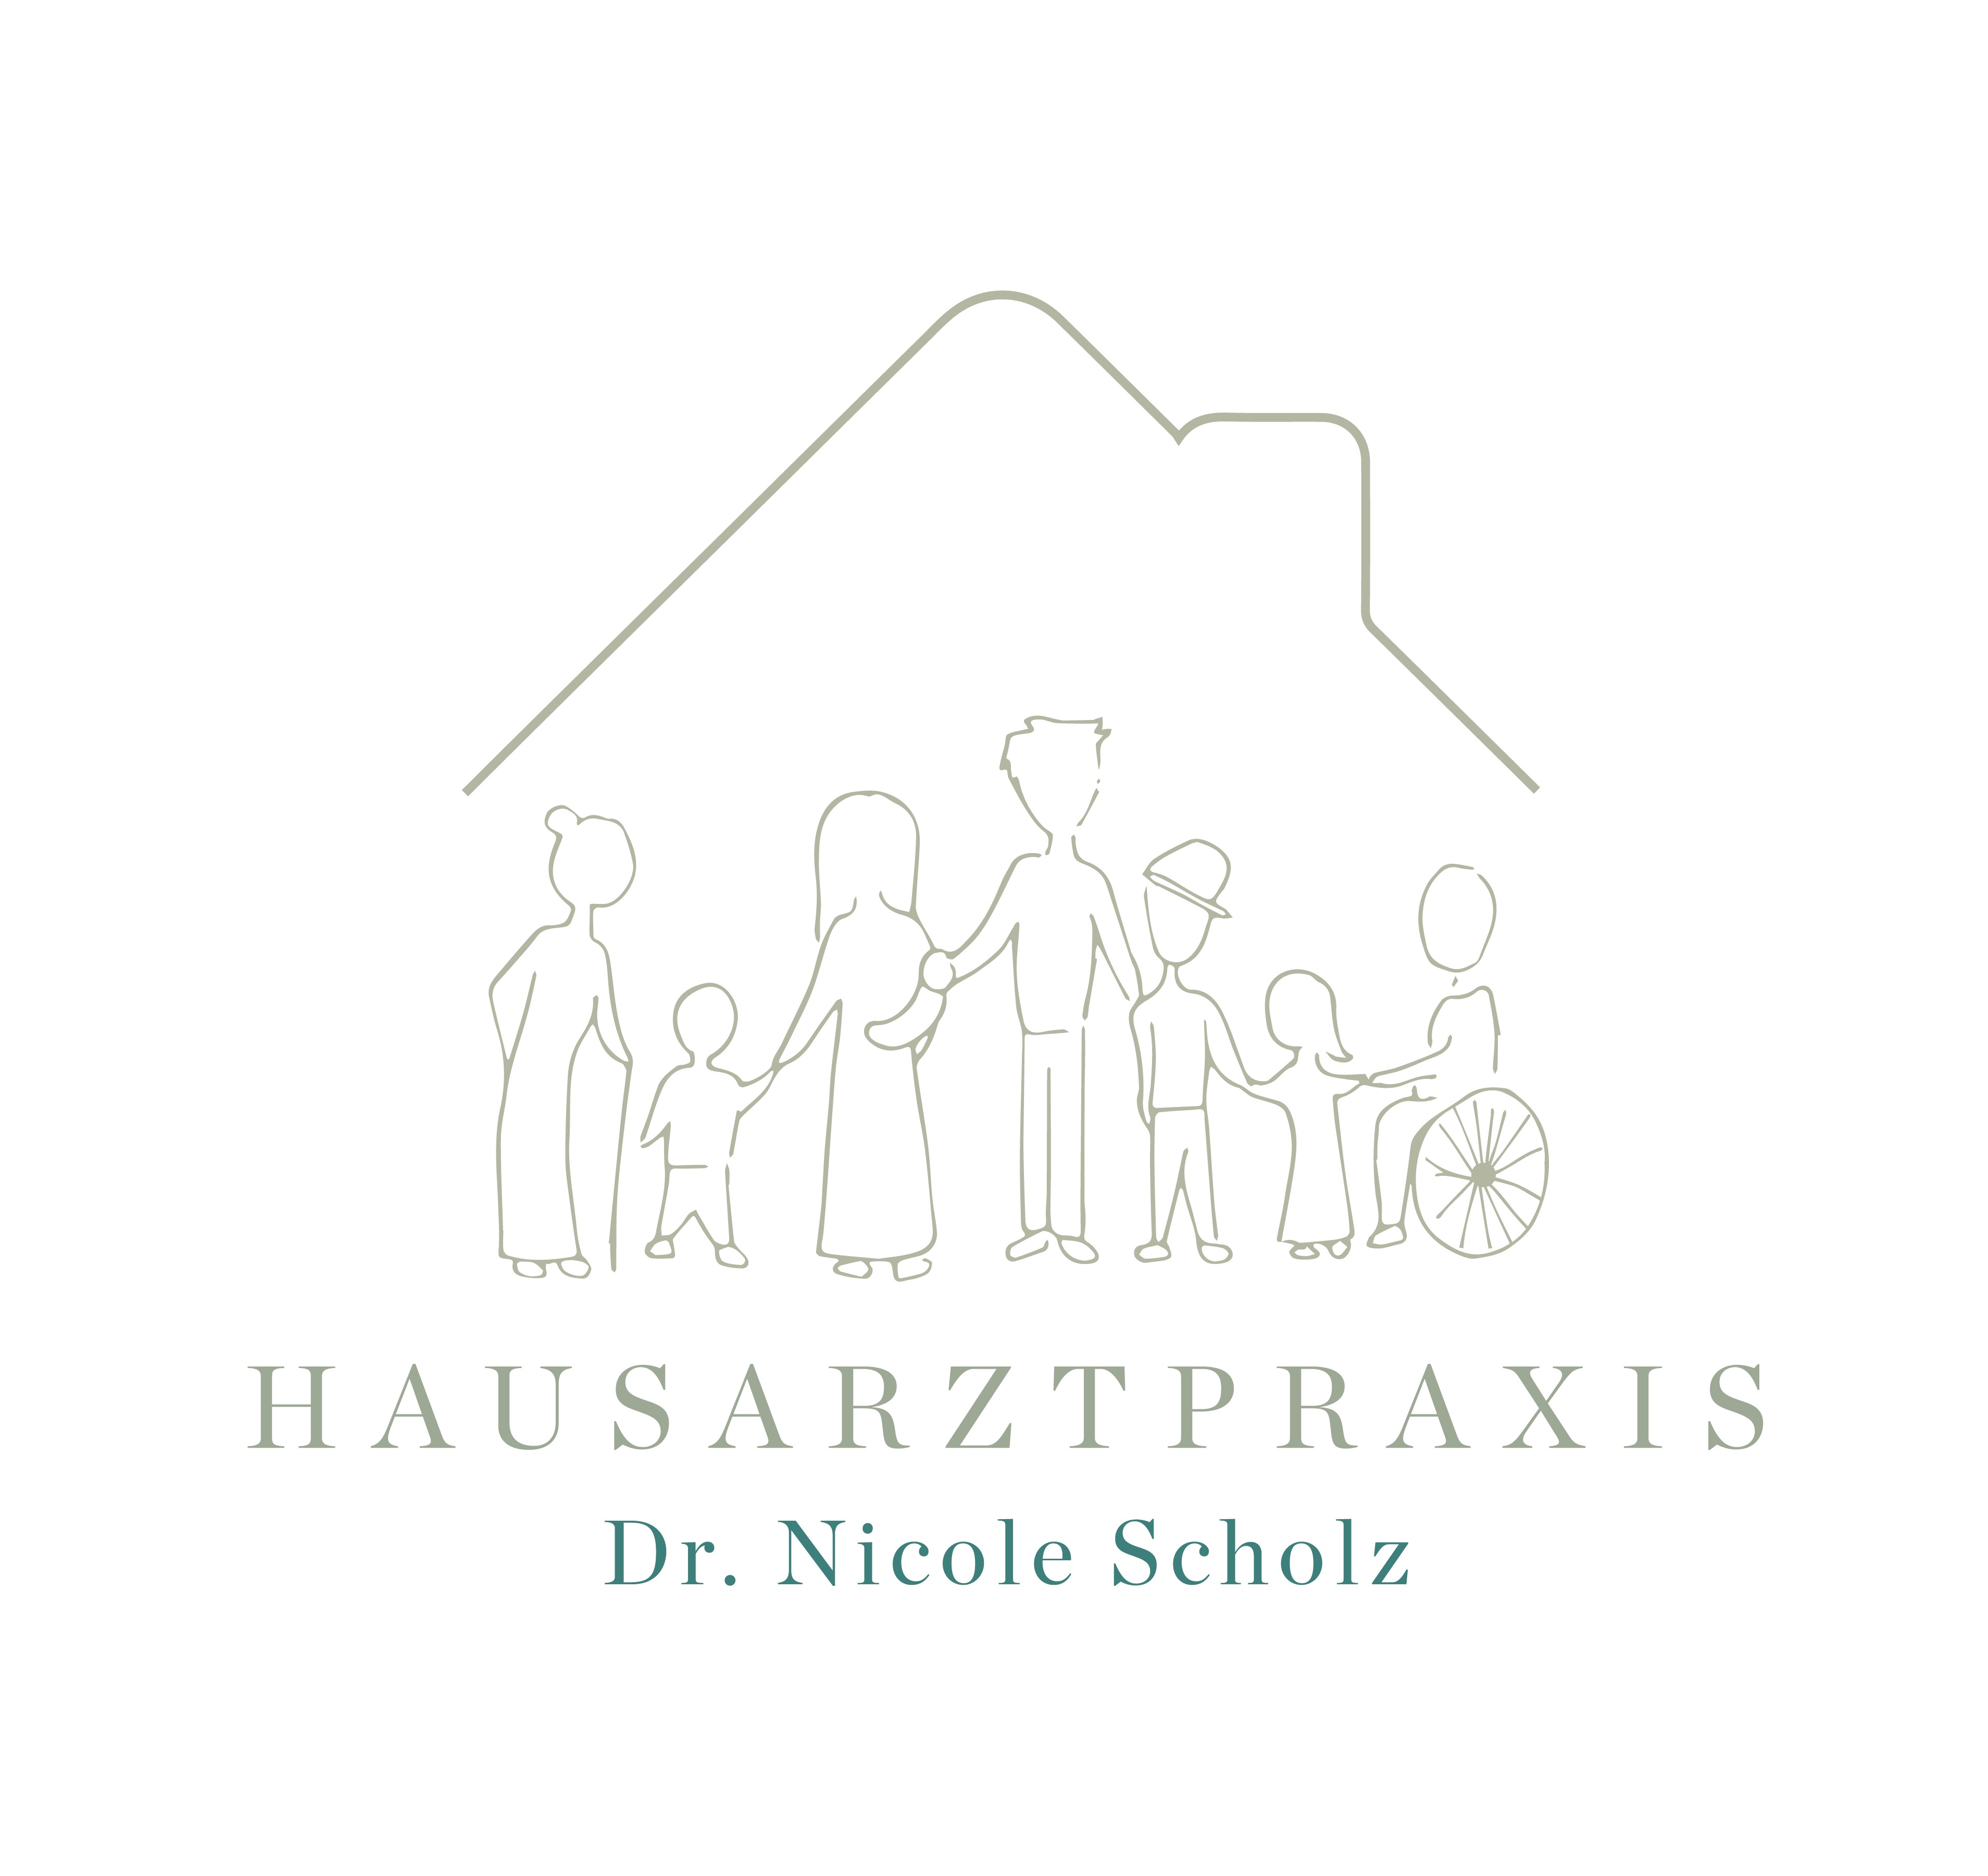 Hausarztpraxis Bad Heilbrunn logo